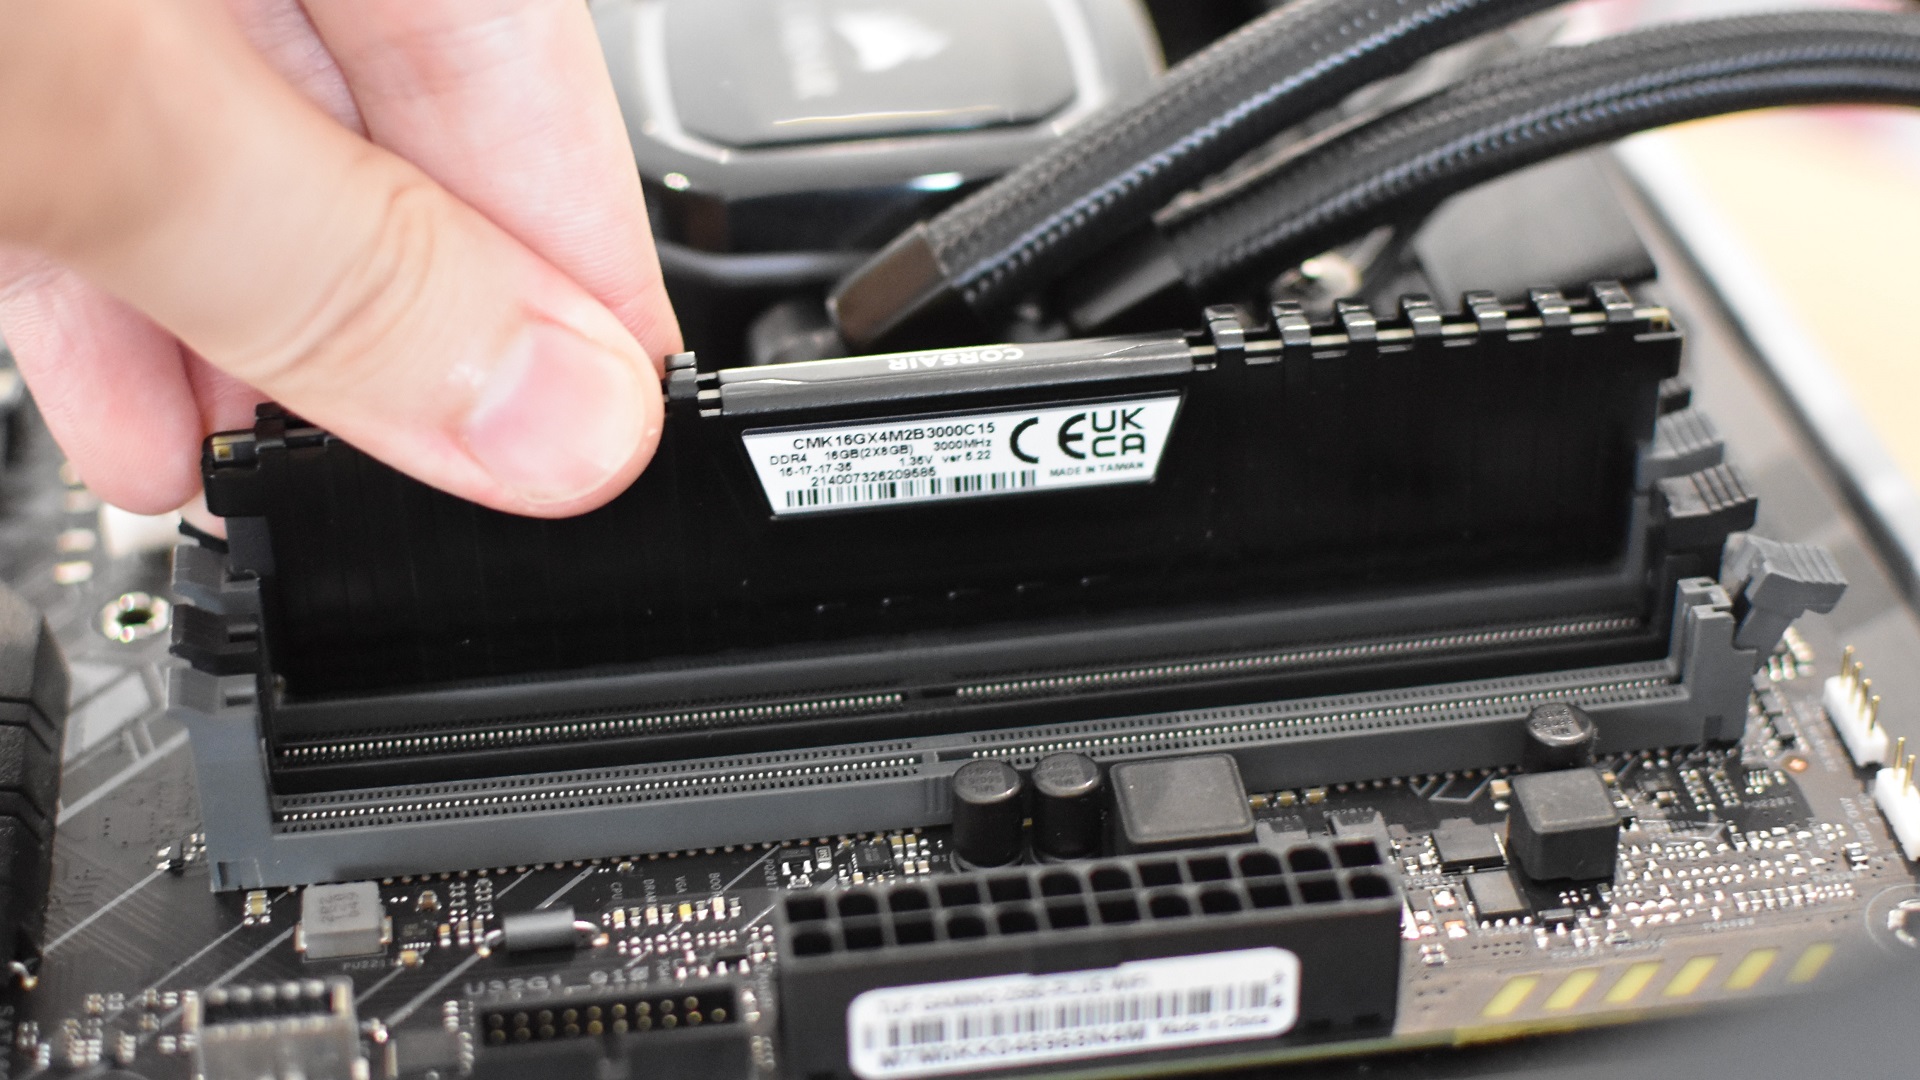 Paso 3 de cómo instalar la memoria RAM: empuje cada memoria RAM en la ranura correcta hasta que el clip vuelva a encajar en su lugar.